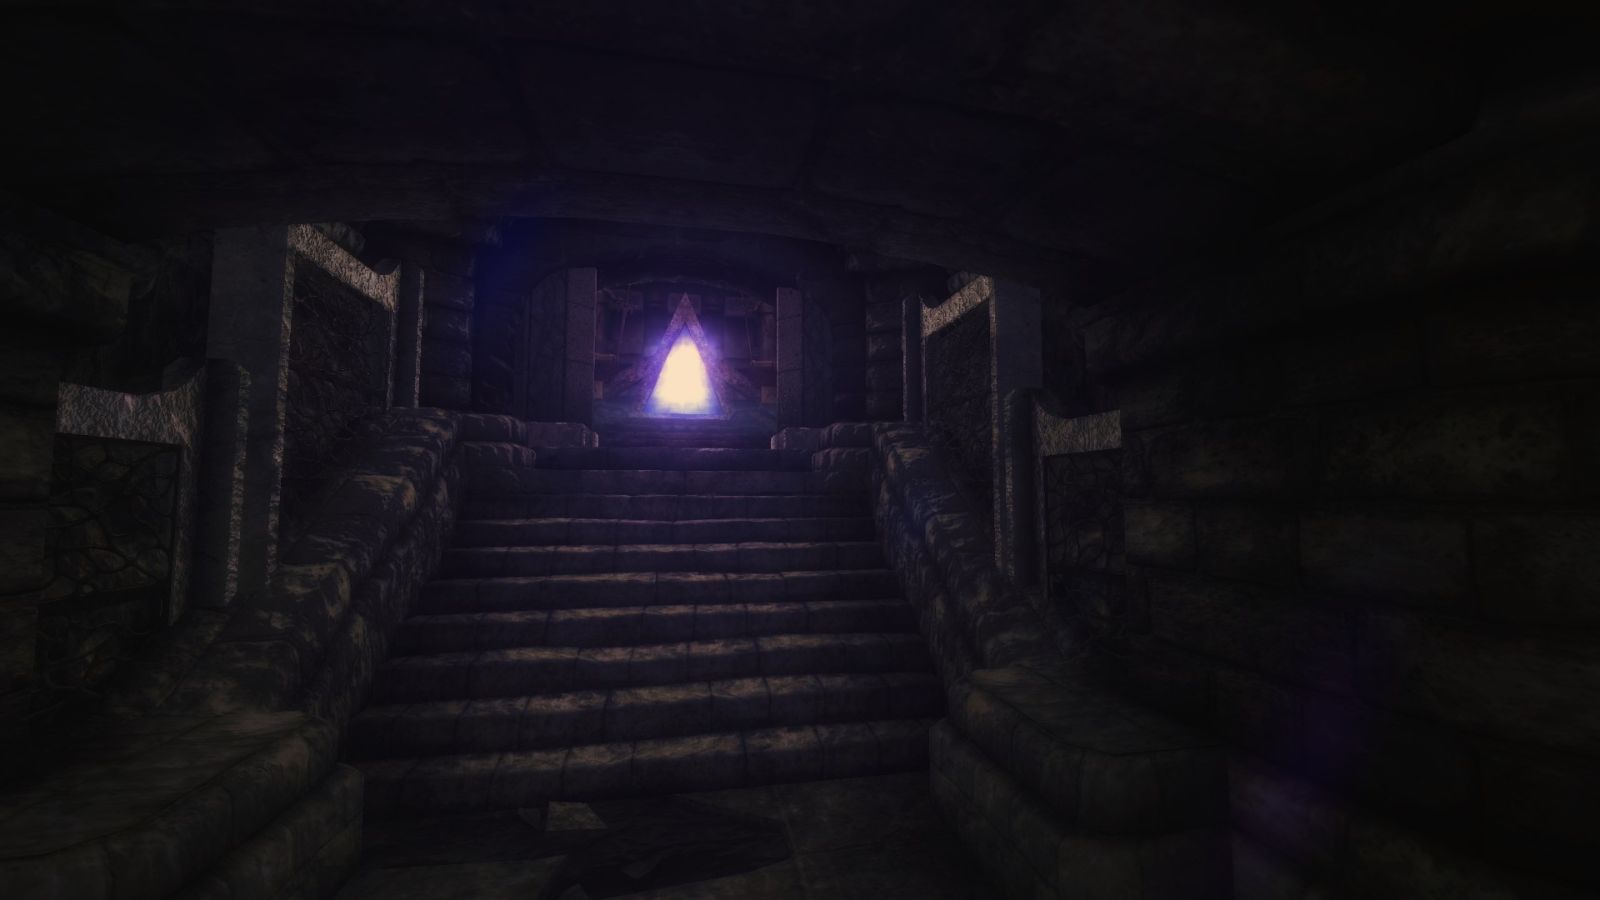 A mysterious portal